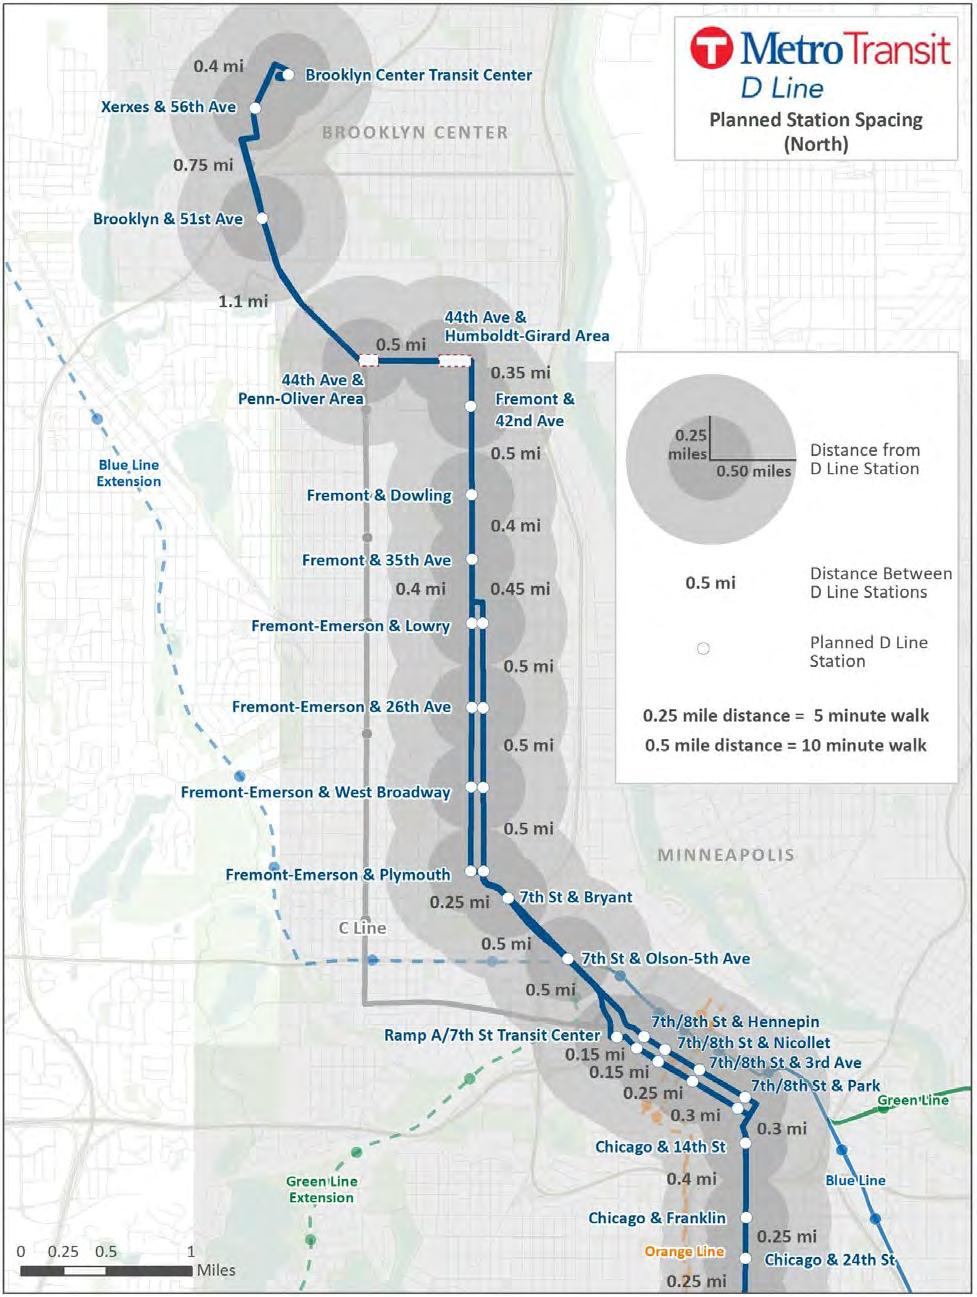 D Line Station Plan Section V: Station Plans Figure 18: